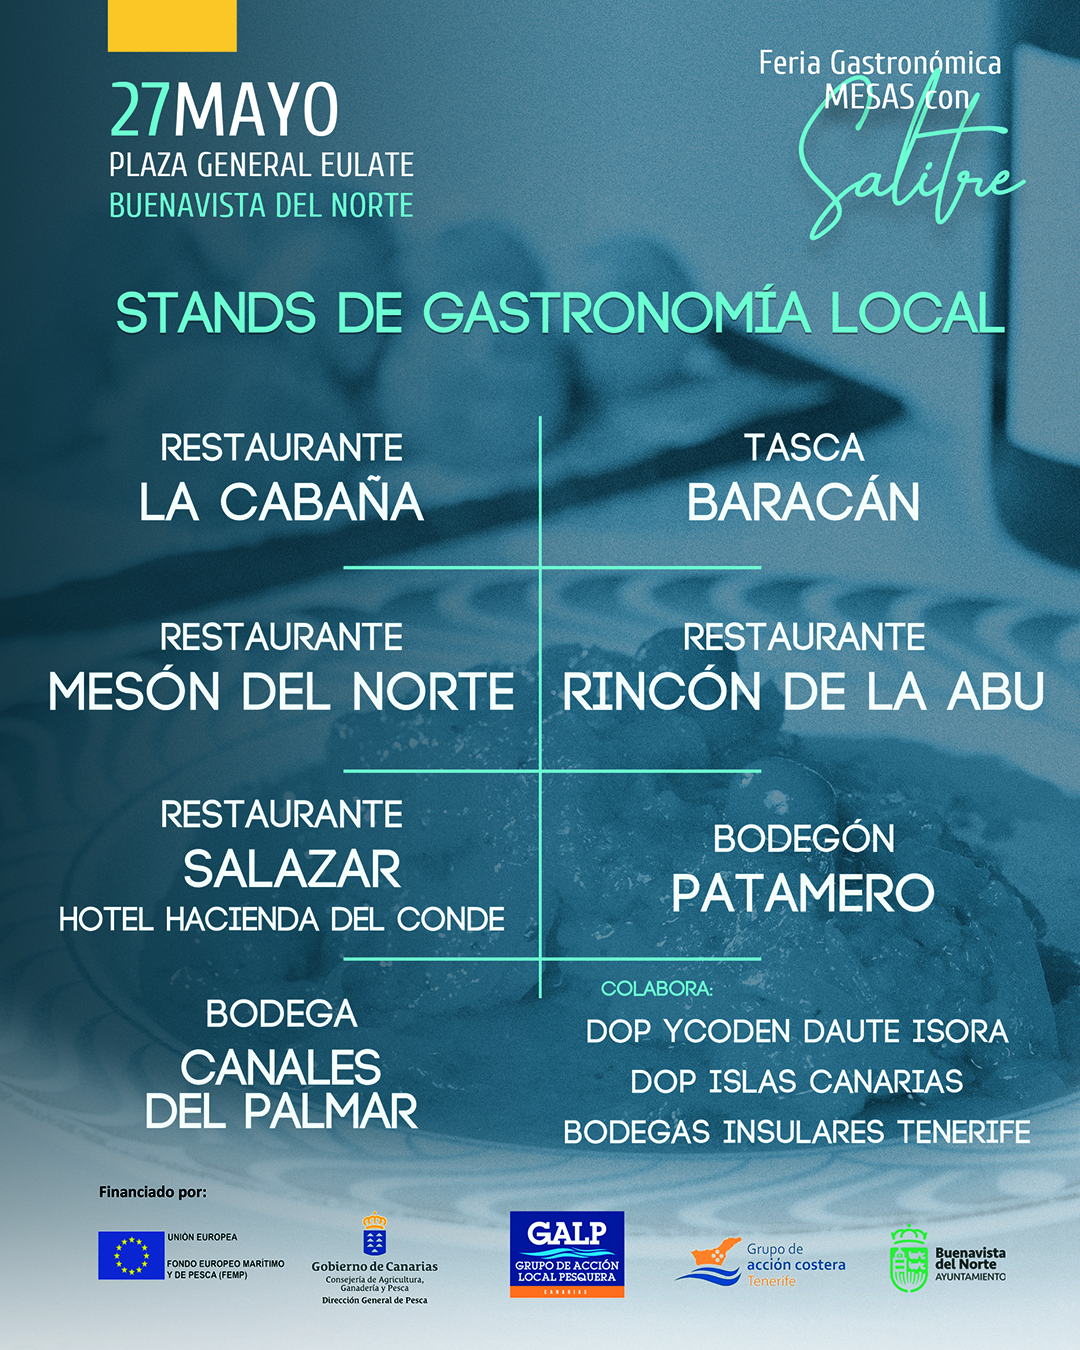 MESAS CON SALITRE. Jornadas Formativas y Feria Gastronómica 1-1 